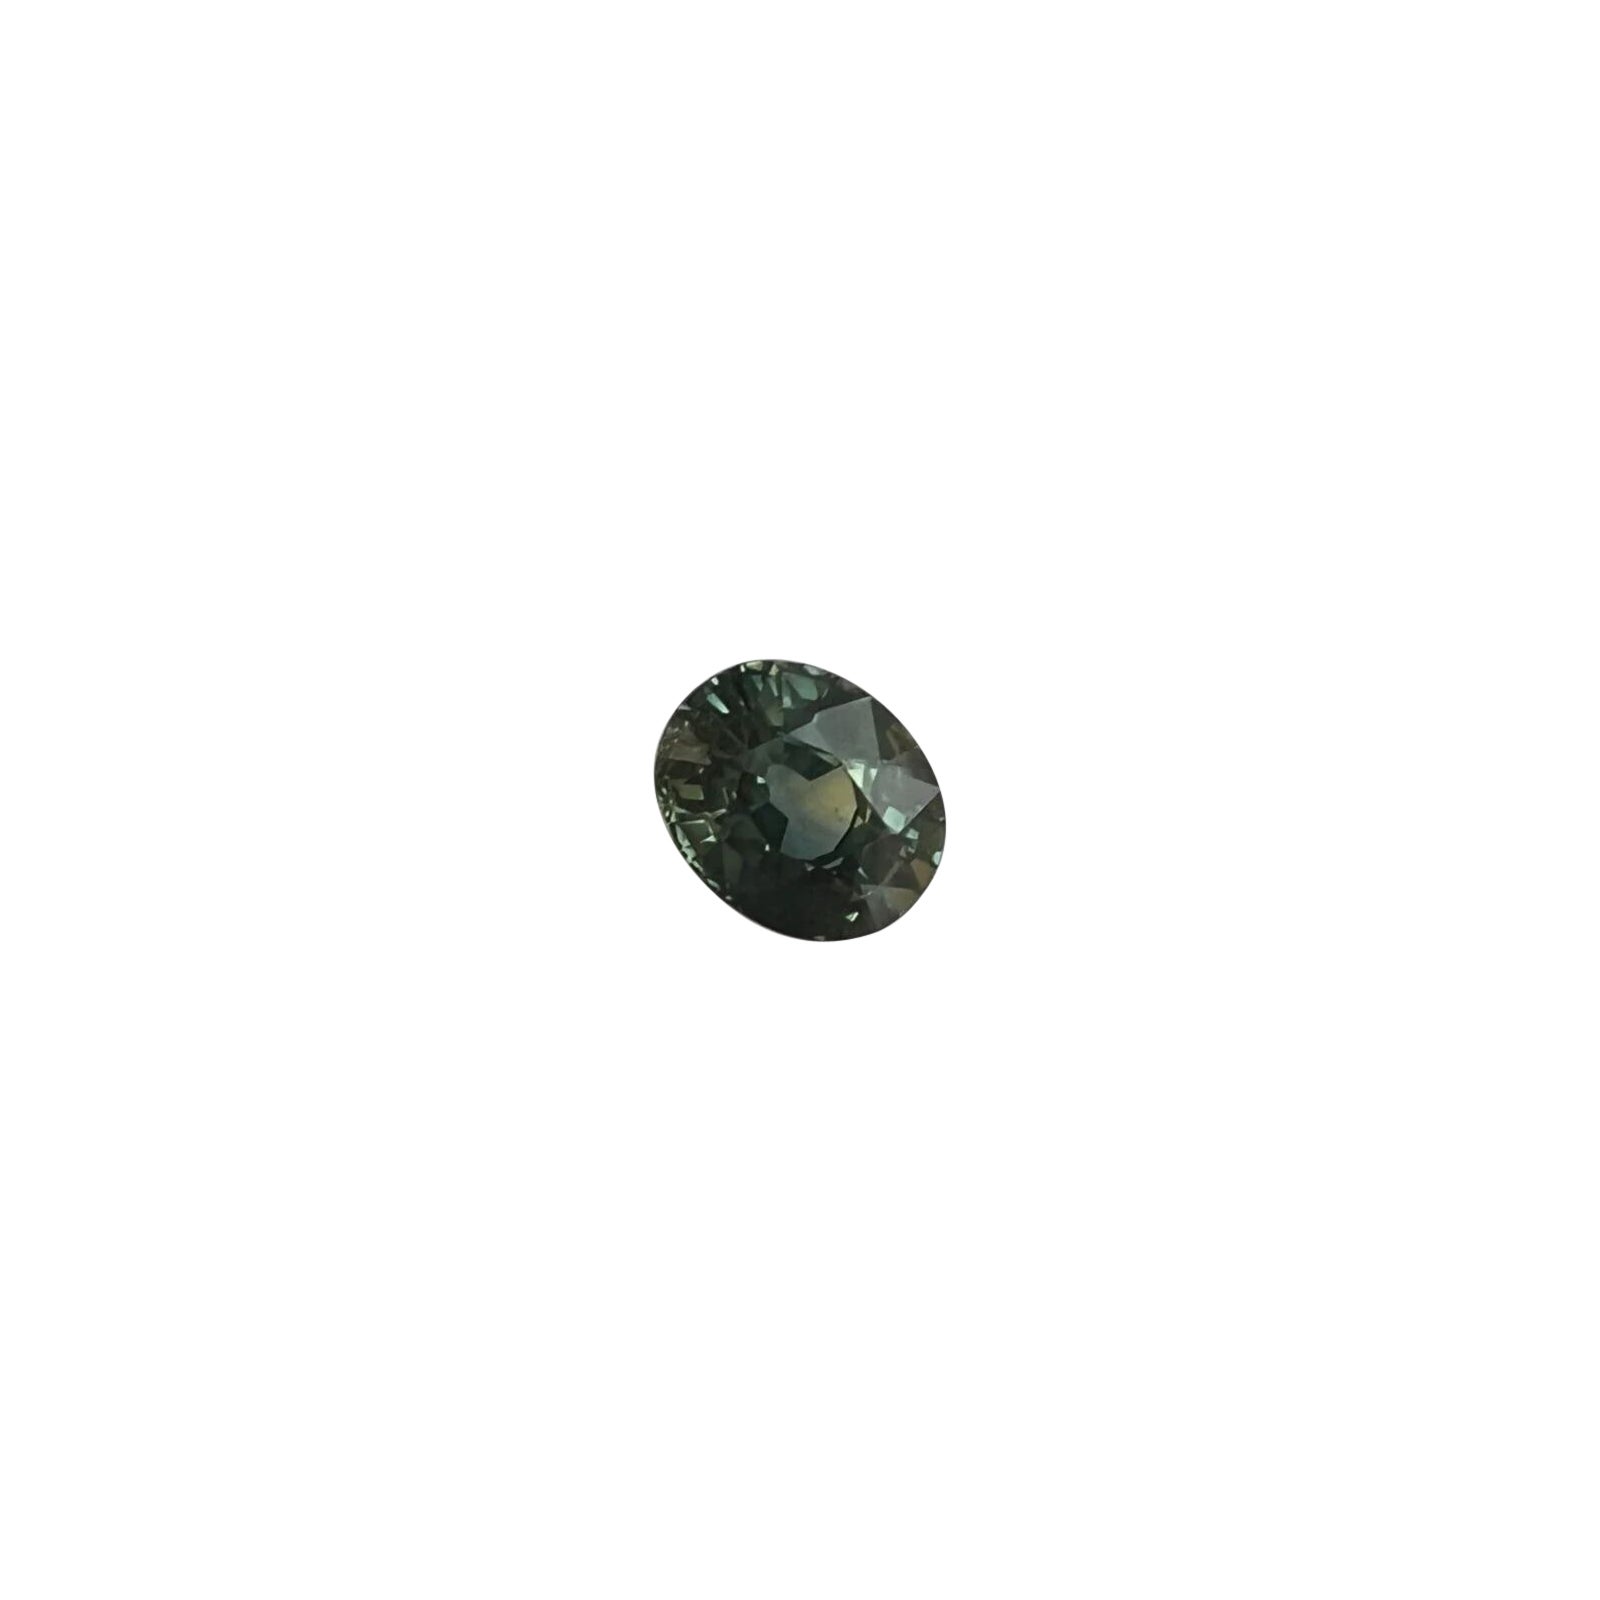 Saphir bleu foncé non chauffé taille ovale certifié IGI de 1,17 carat avec changement de couleur en vente